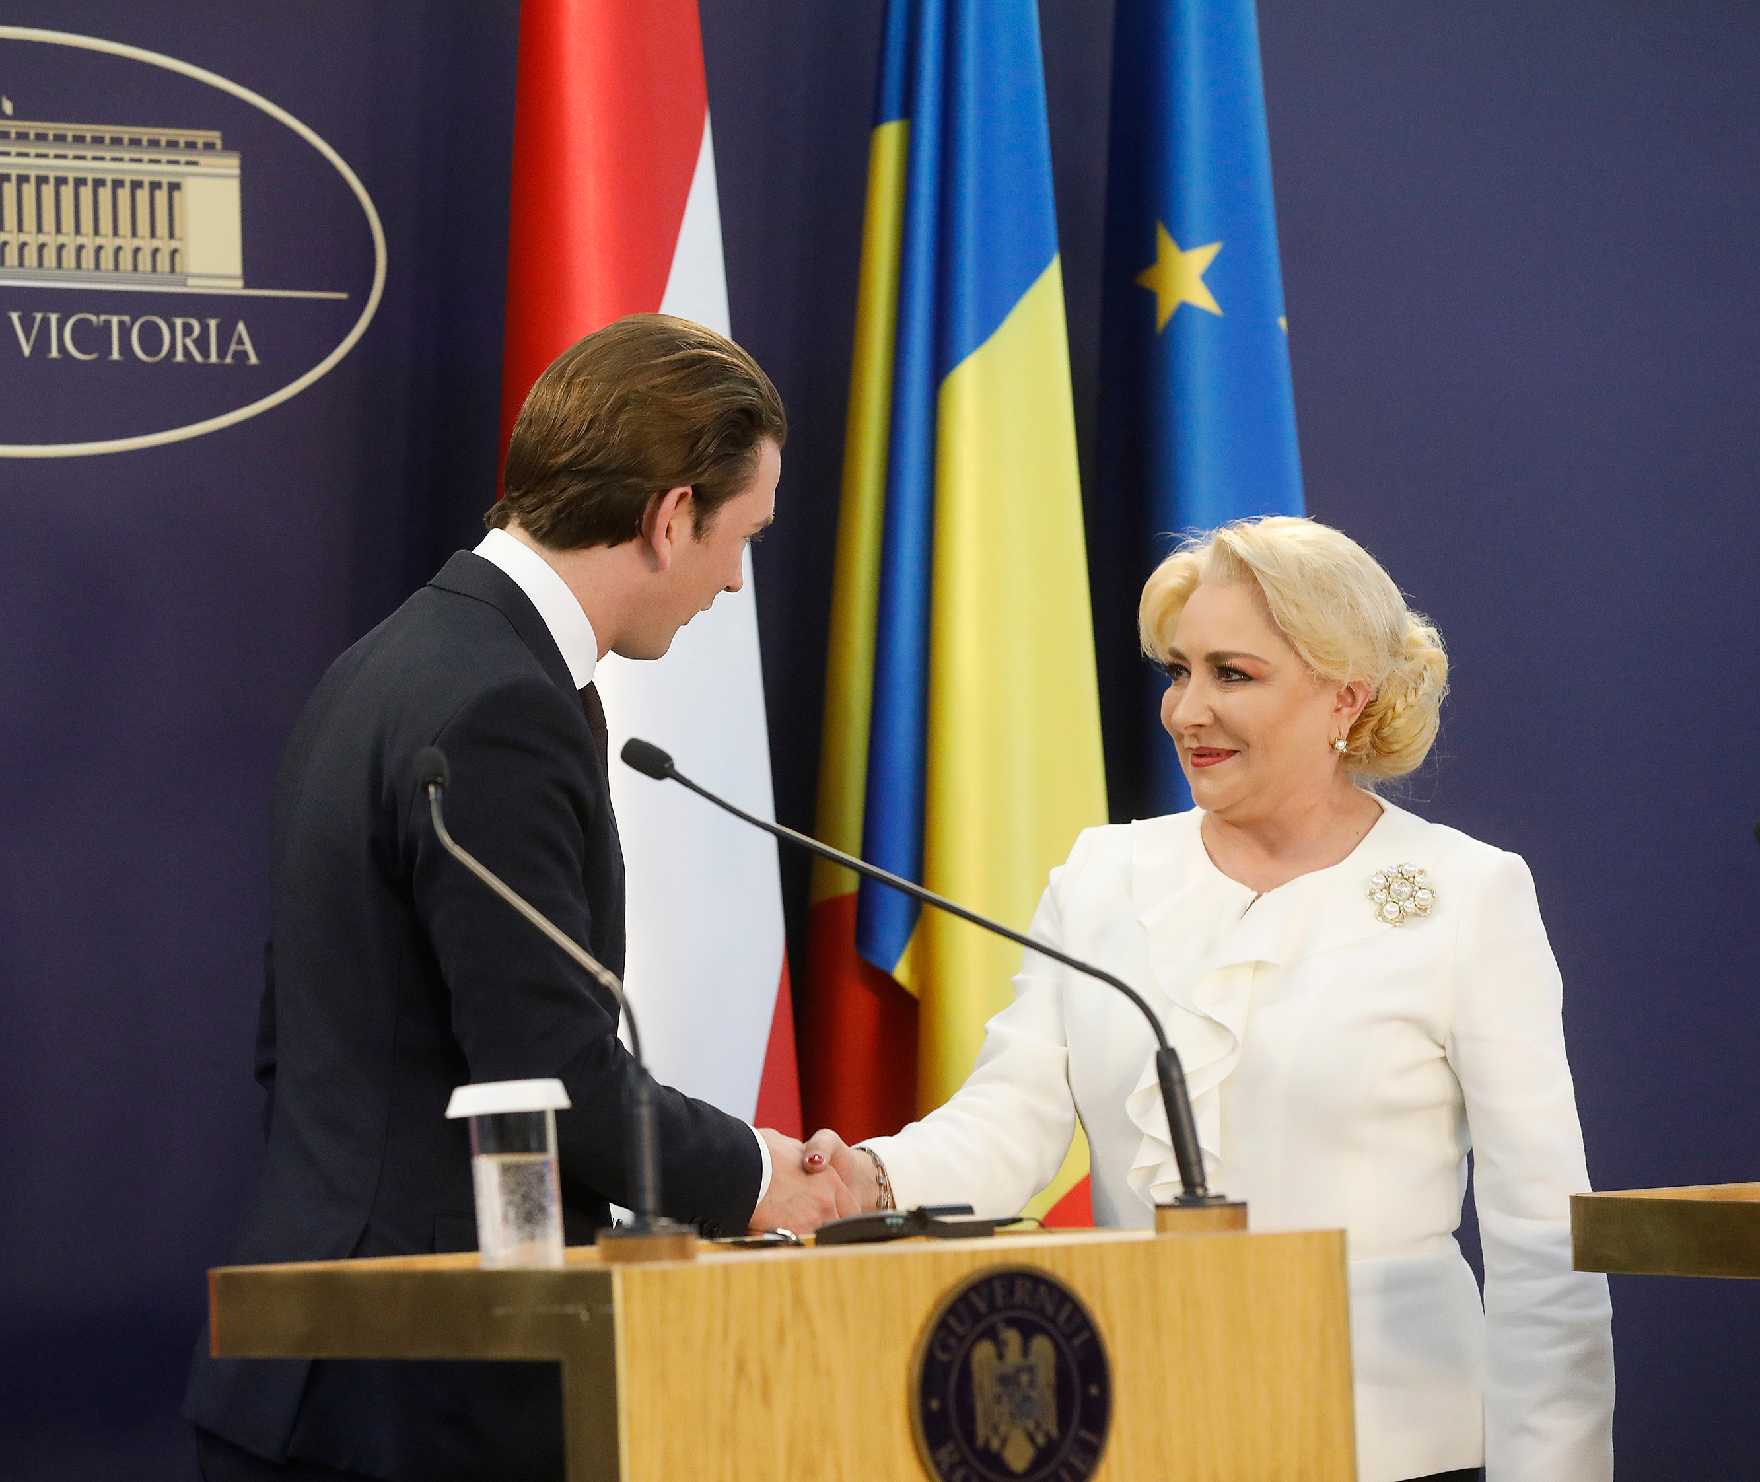 Румунія з 1 січня почала головувати у Раді Європейського Союзу